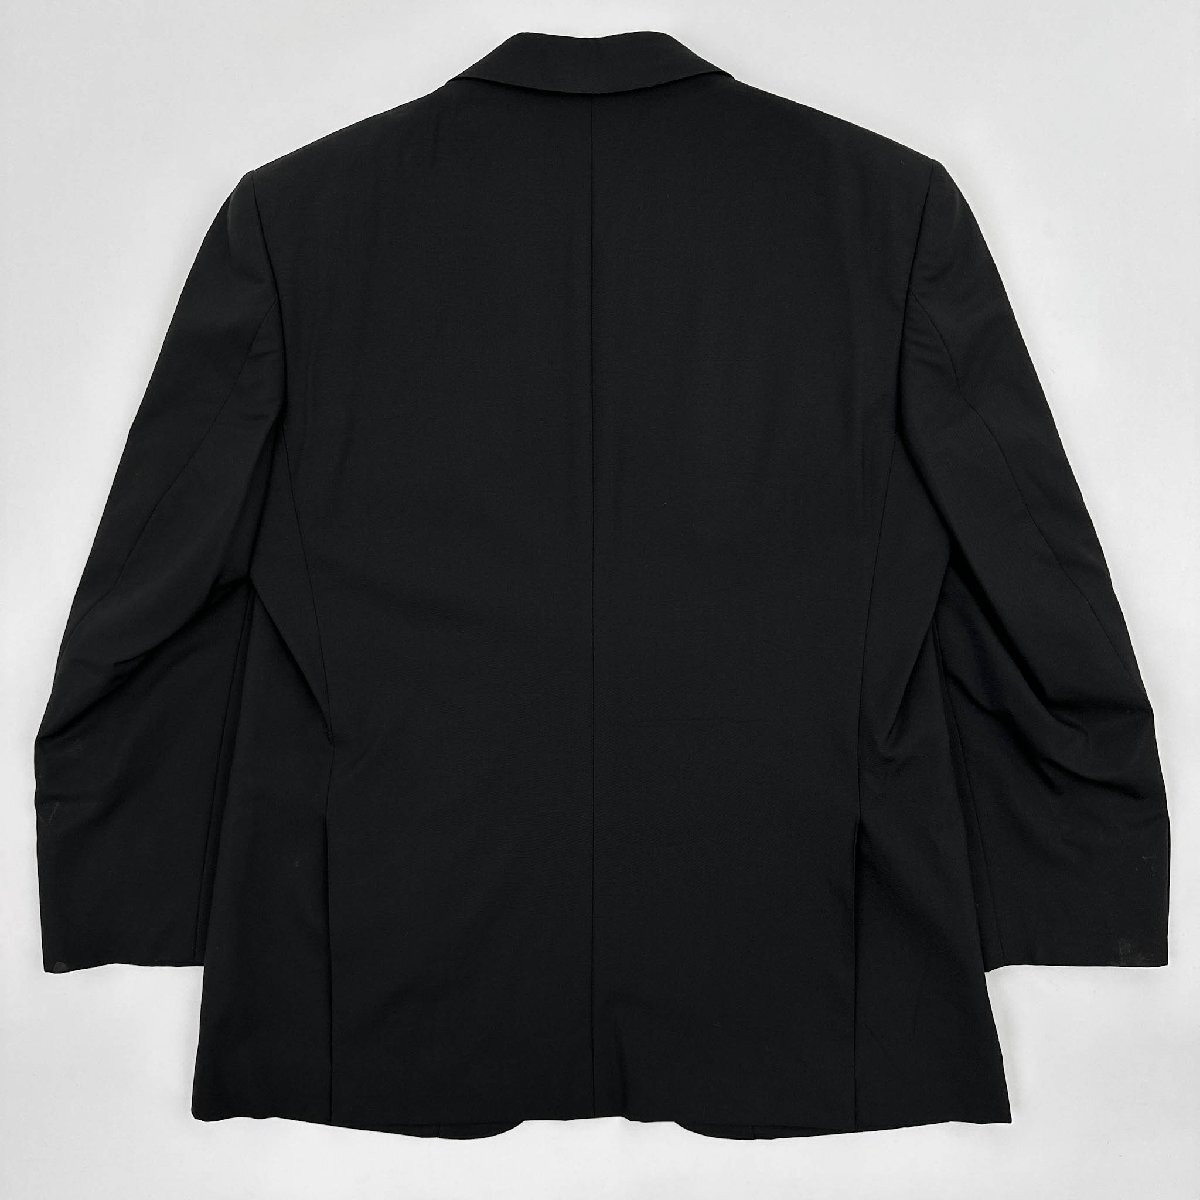 LANVIN COLLECTION ランバン 2B ウール テーラードジャケット サイズ R46-44 / 黒 ブラック メンズ 紳士 日本製 背抜き_画像8